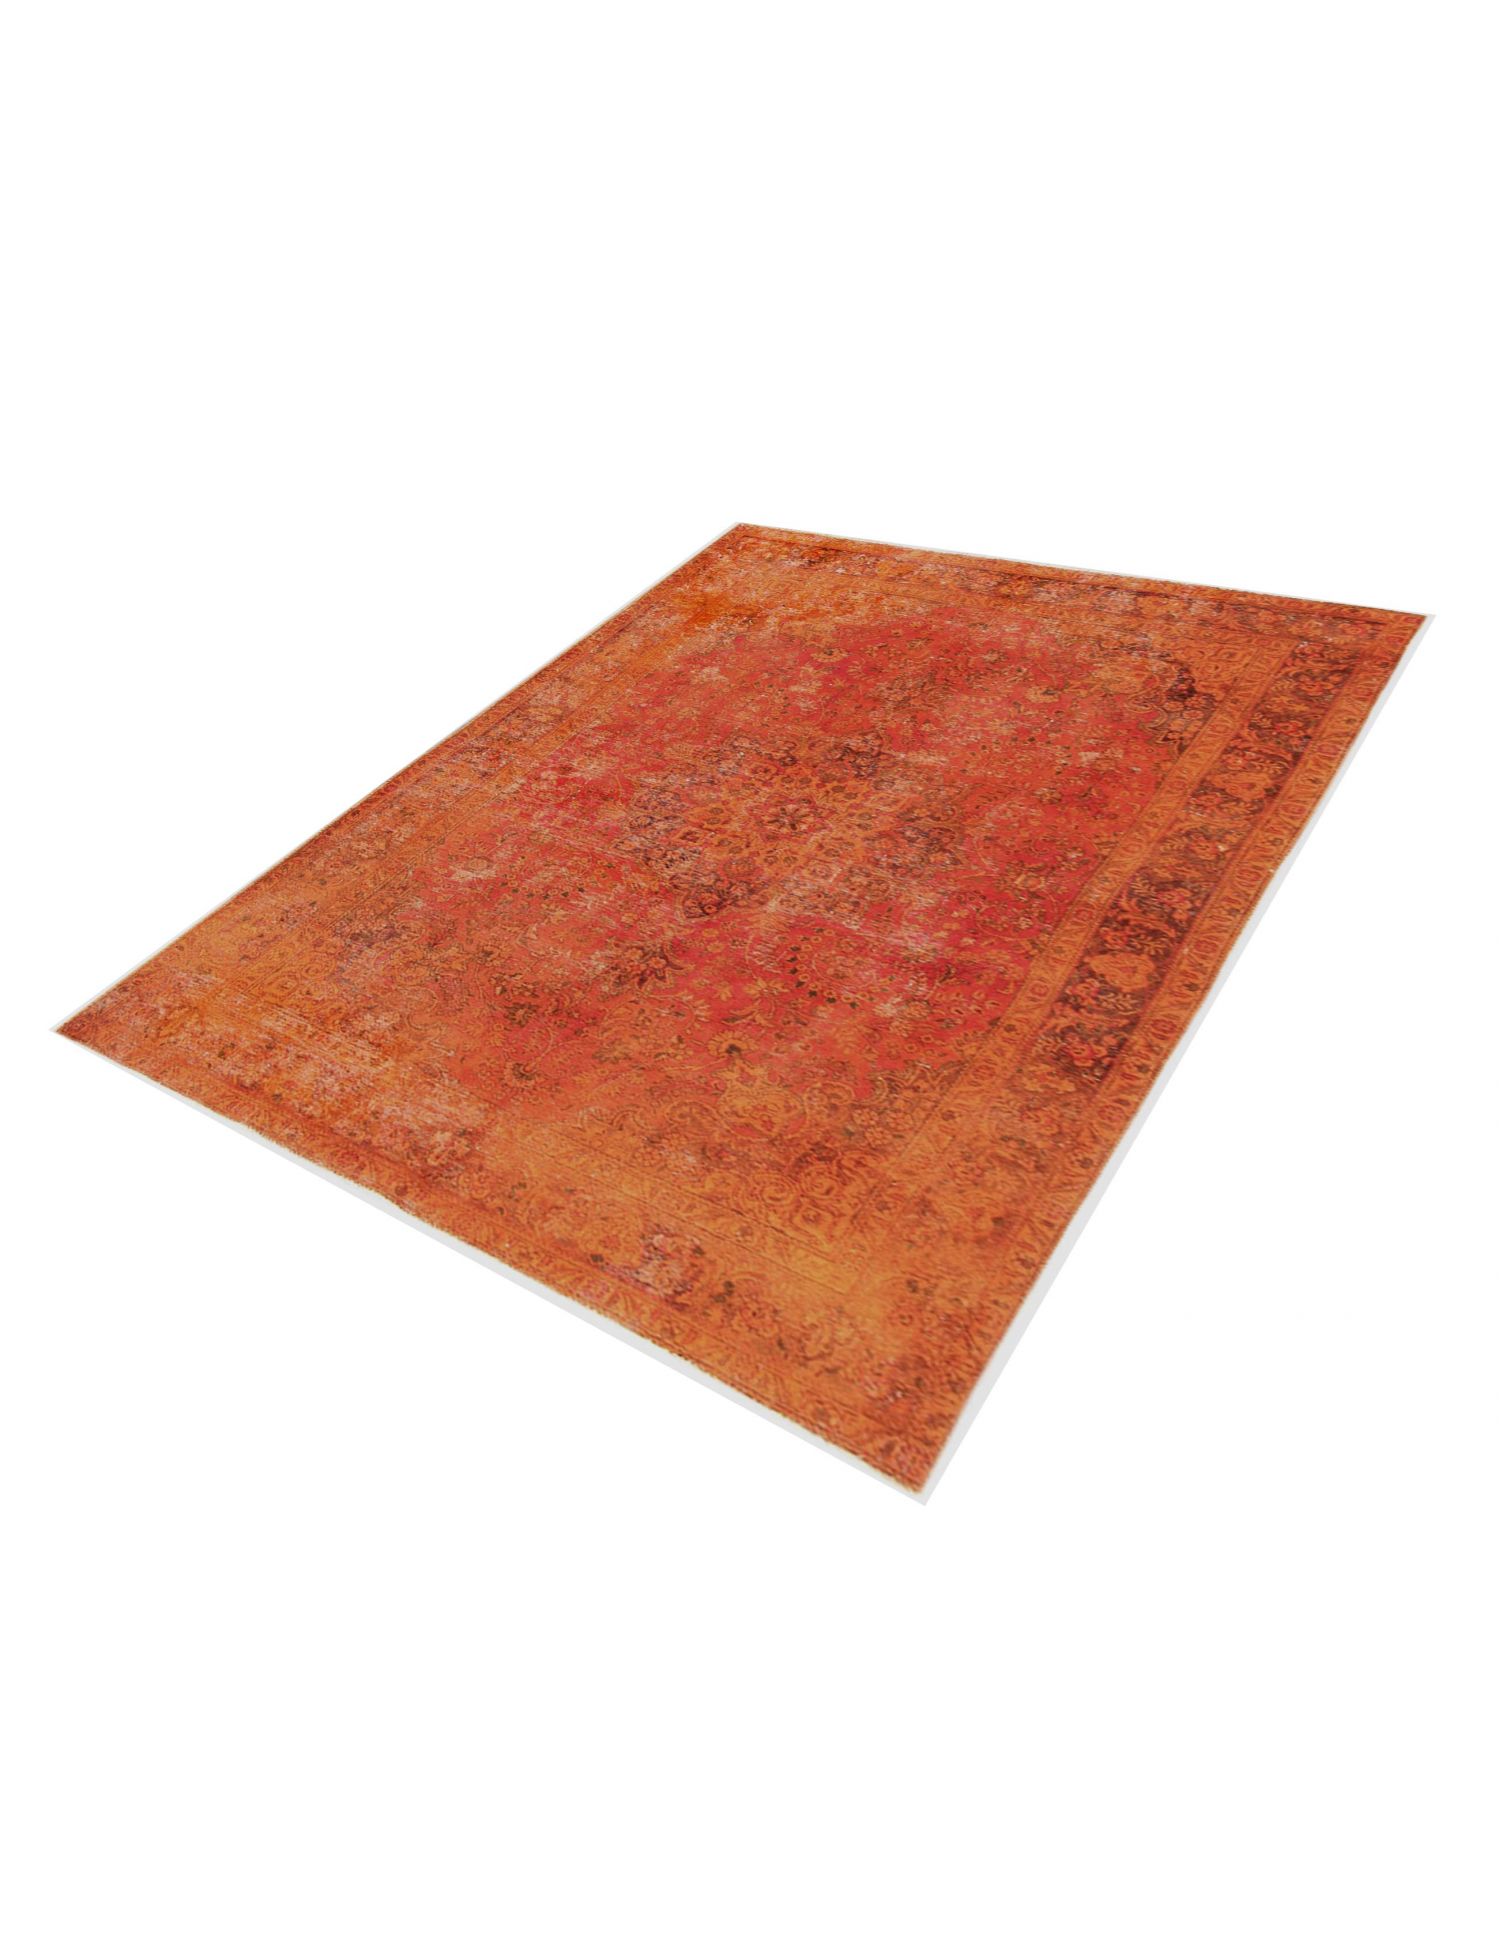 Persischer Vintage Teppich  orange <br/>305 x 200 cm